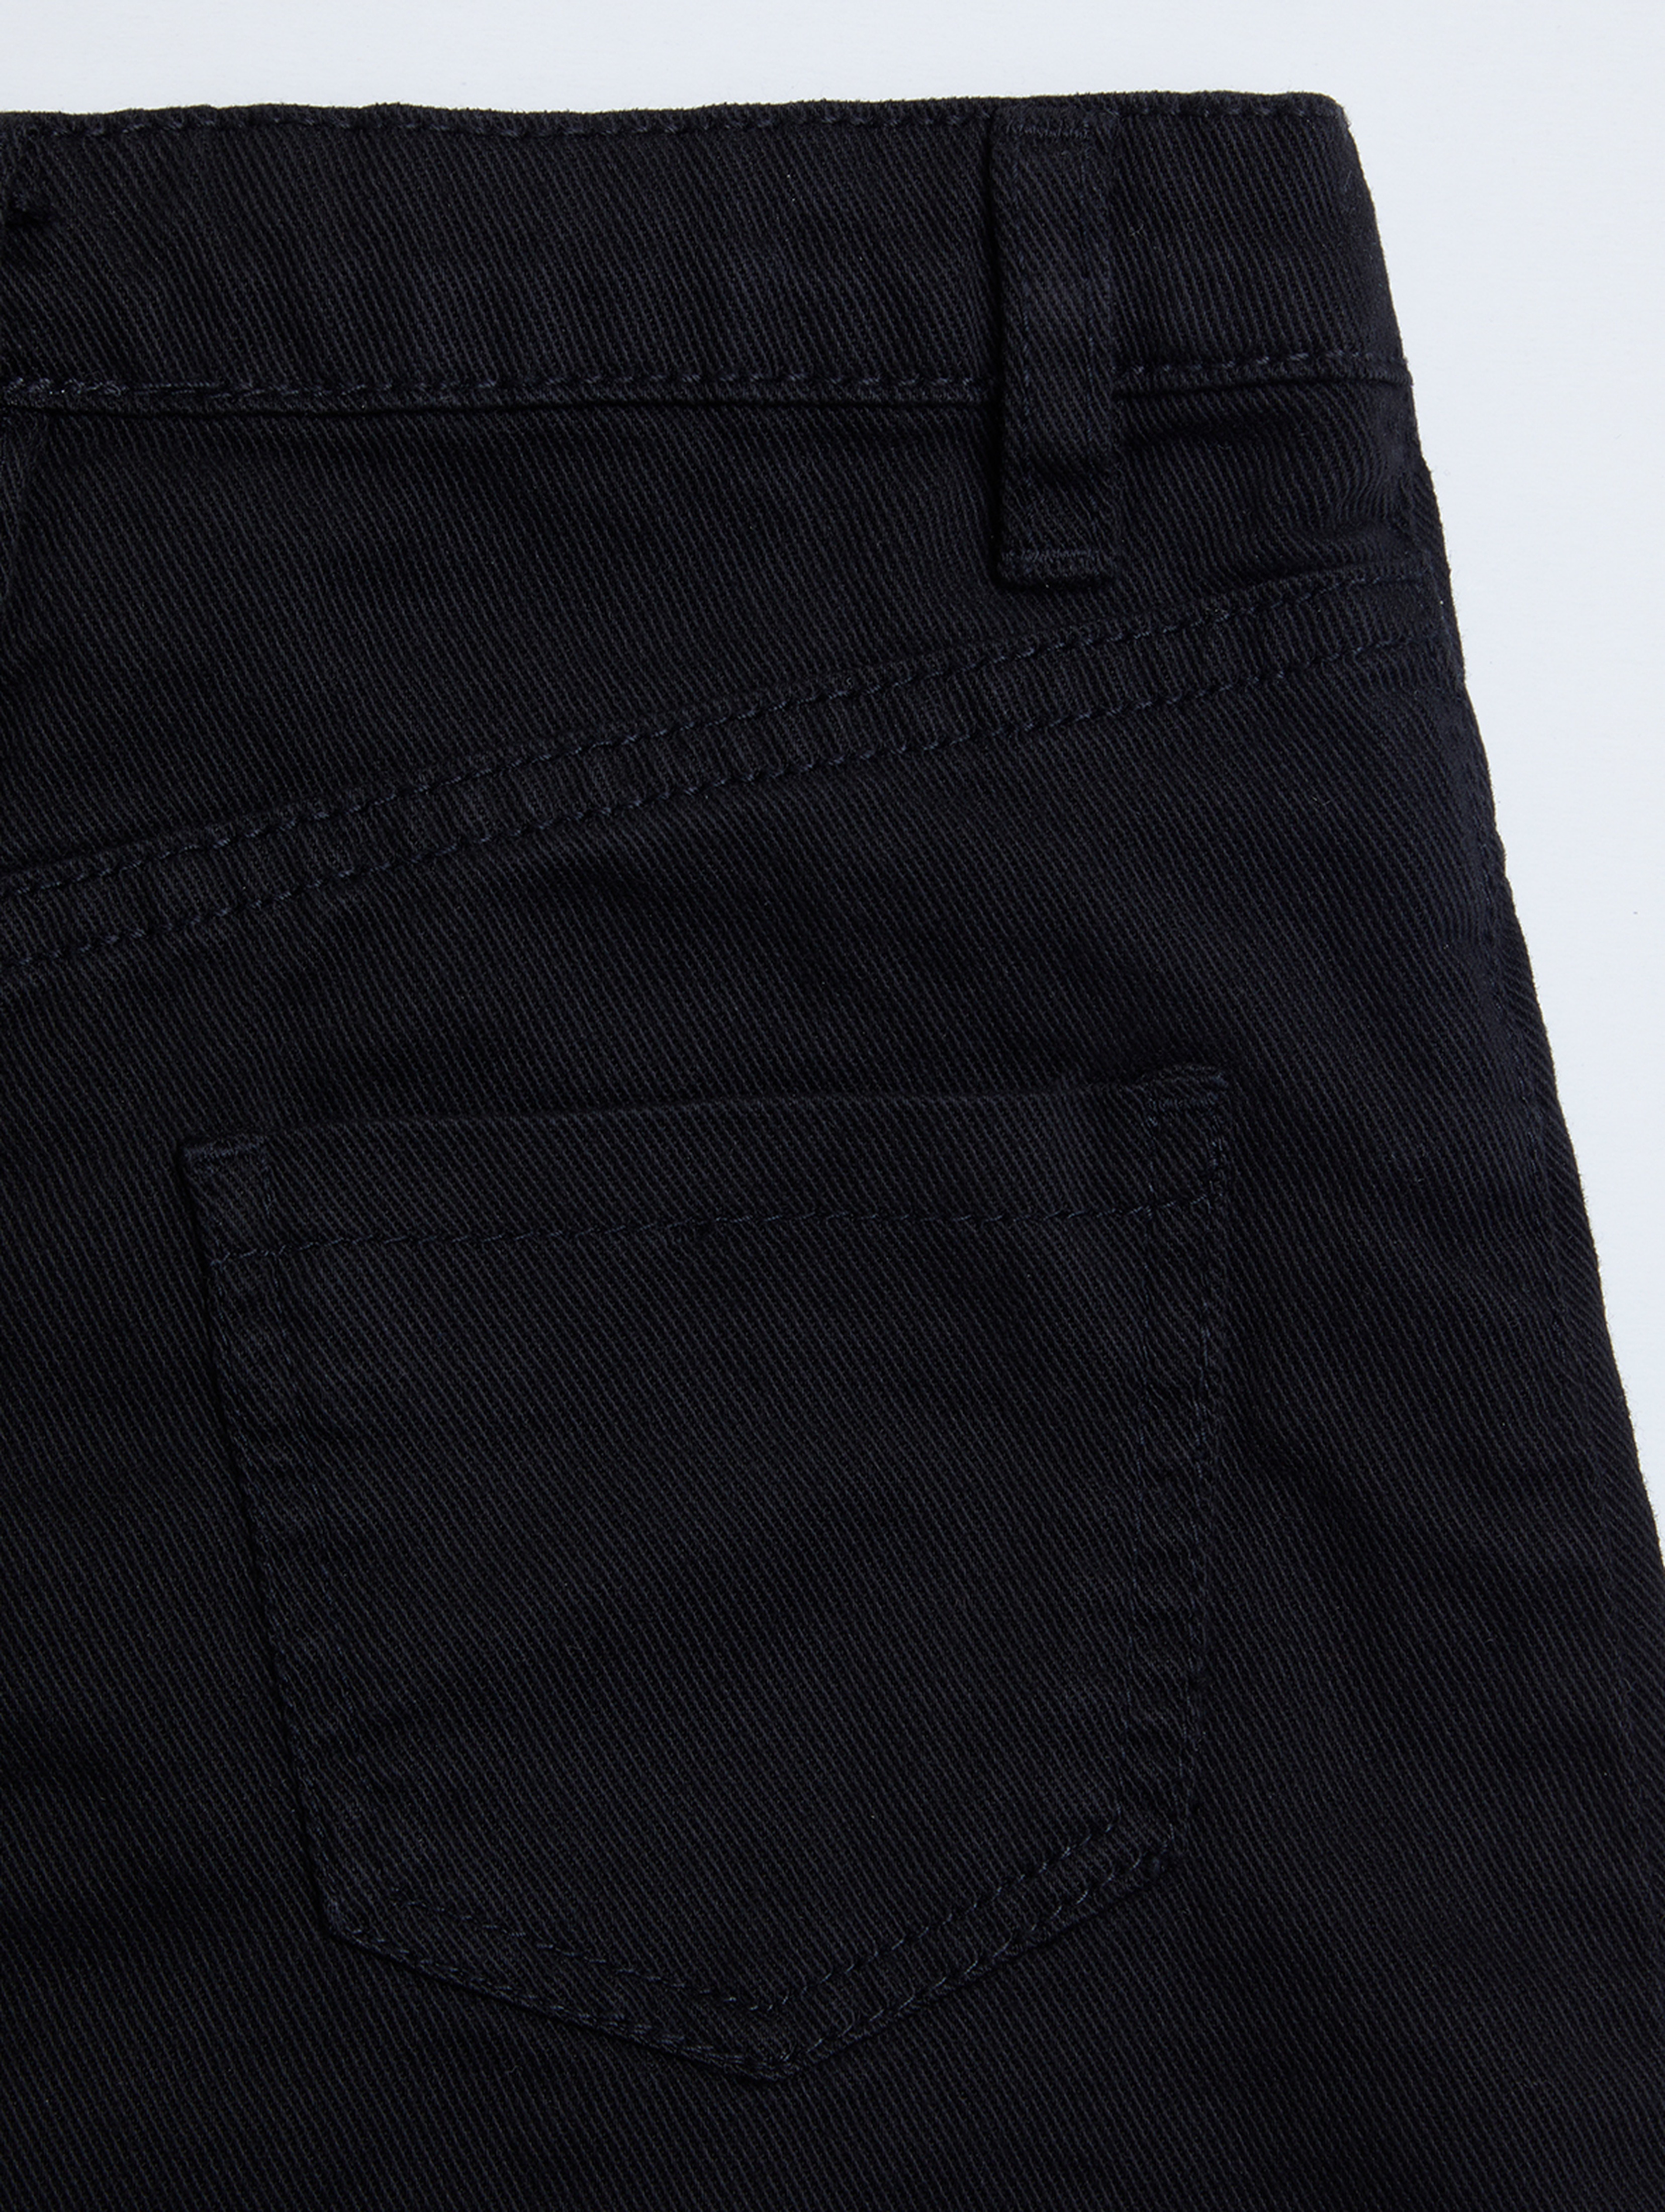 Czarna jeansowa spódnica dla dziewczynki - Limited Edition